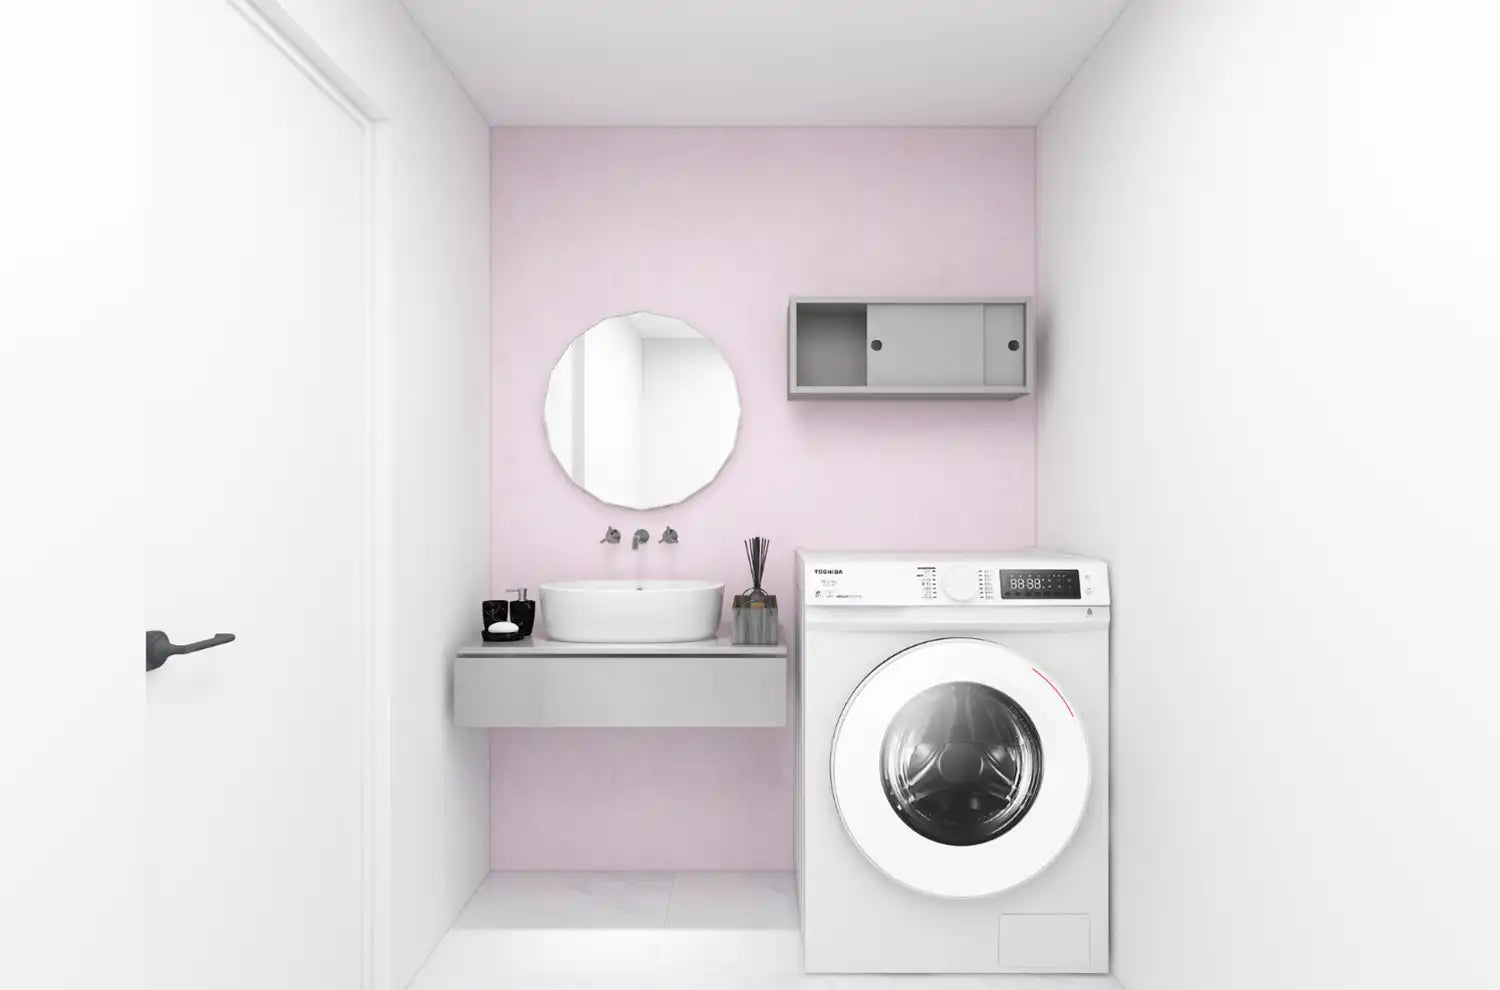 薄いピンクの壁紙の貼られた洗面スペース